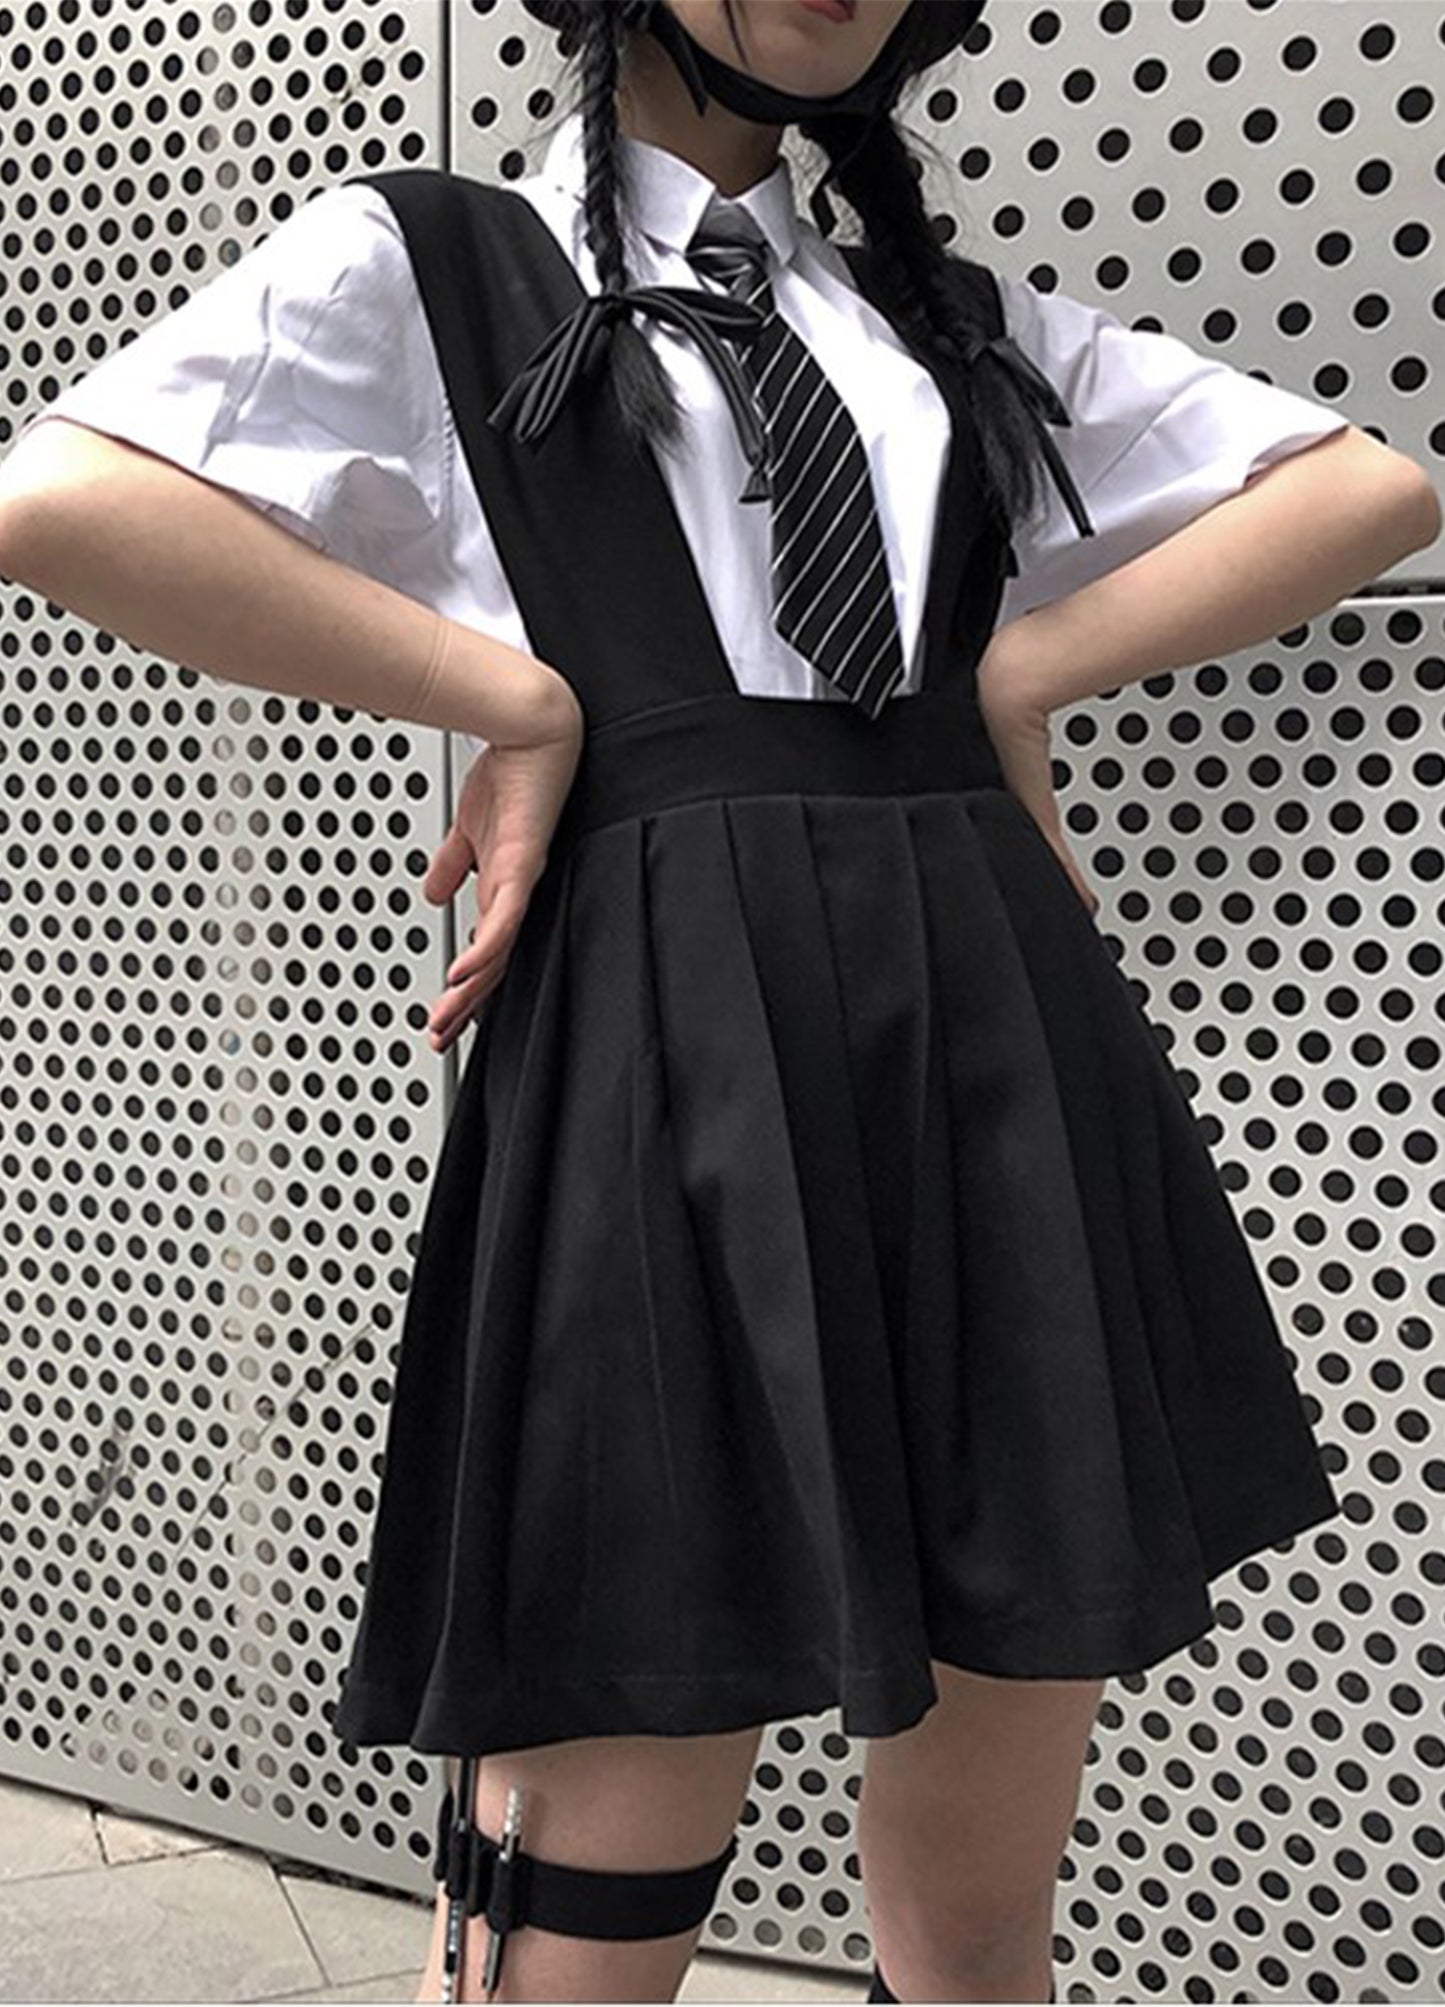 Japanese School Girl Dress